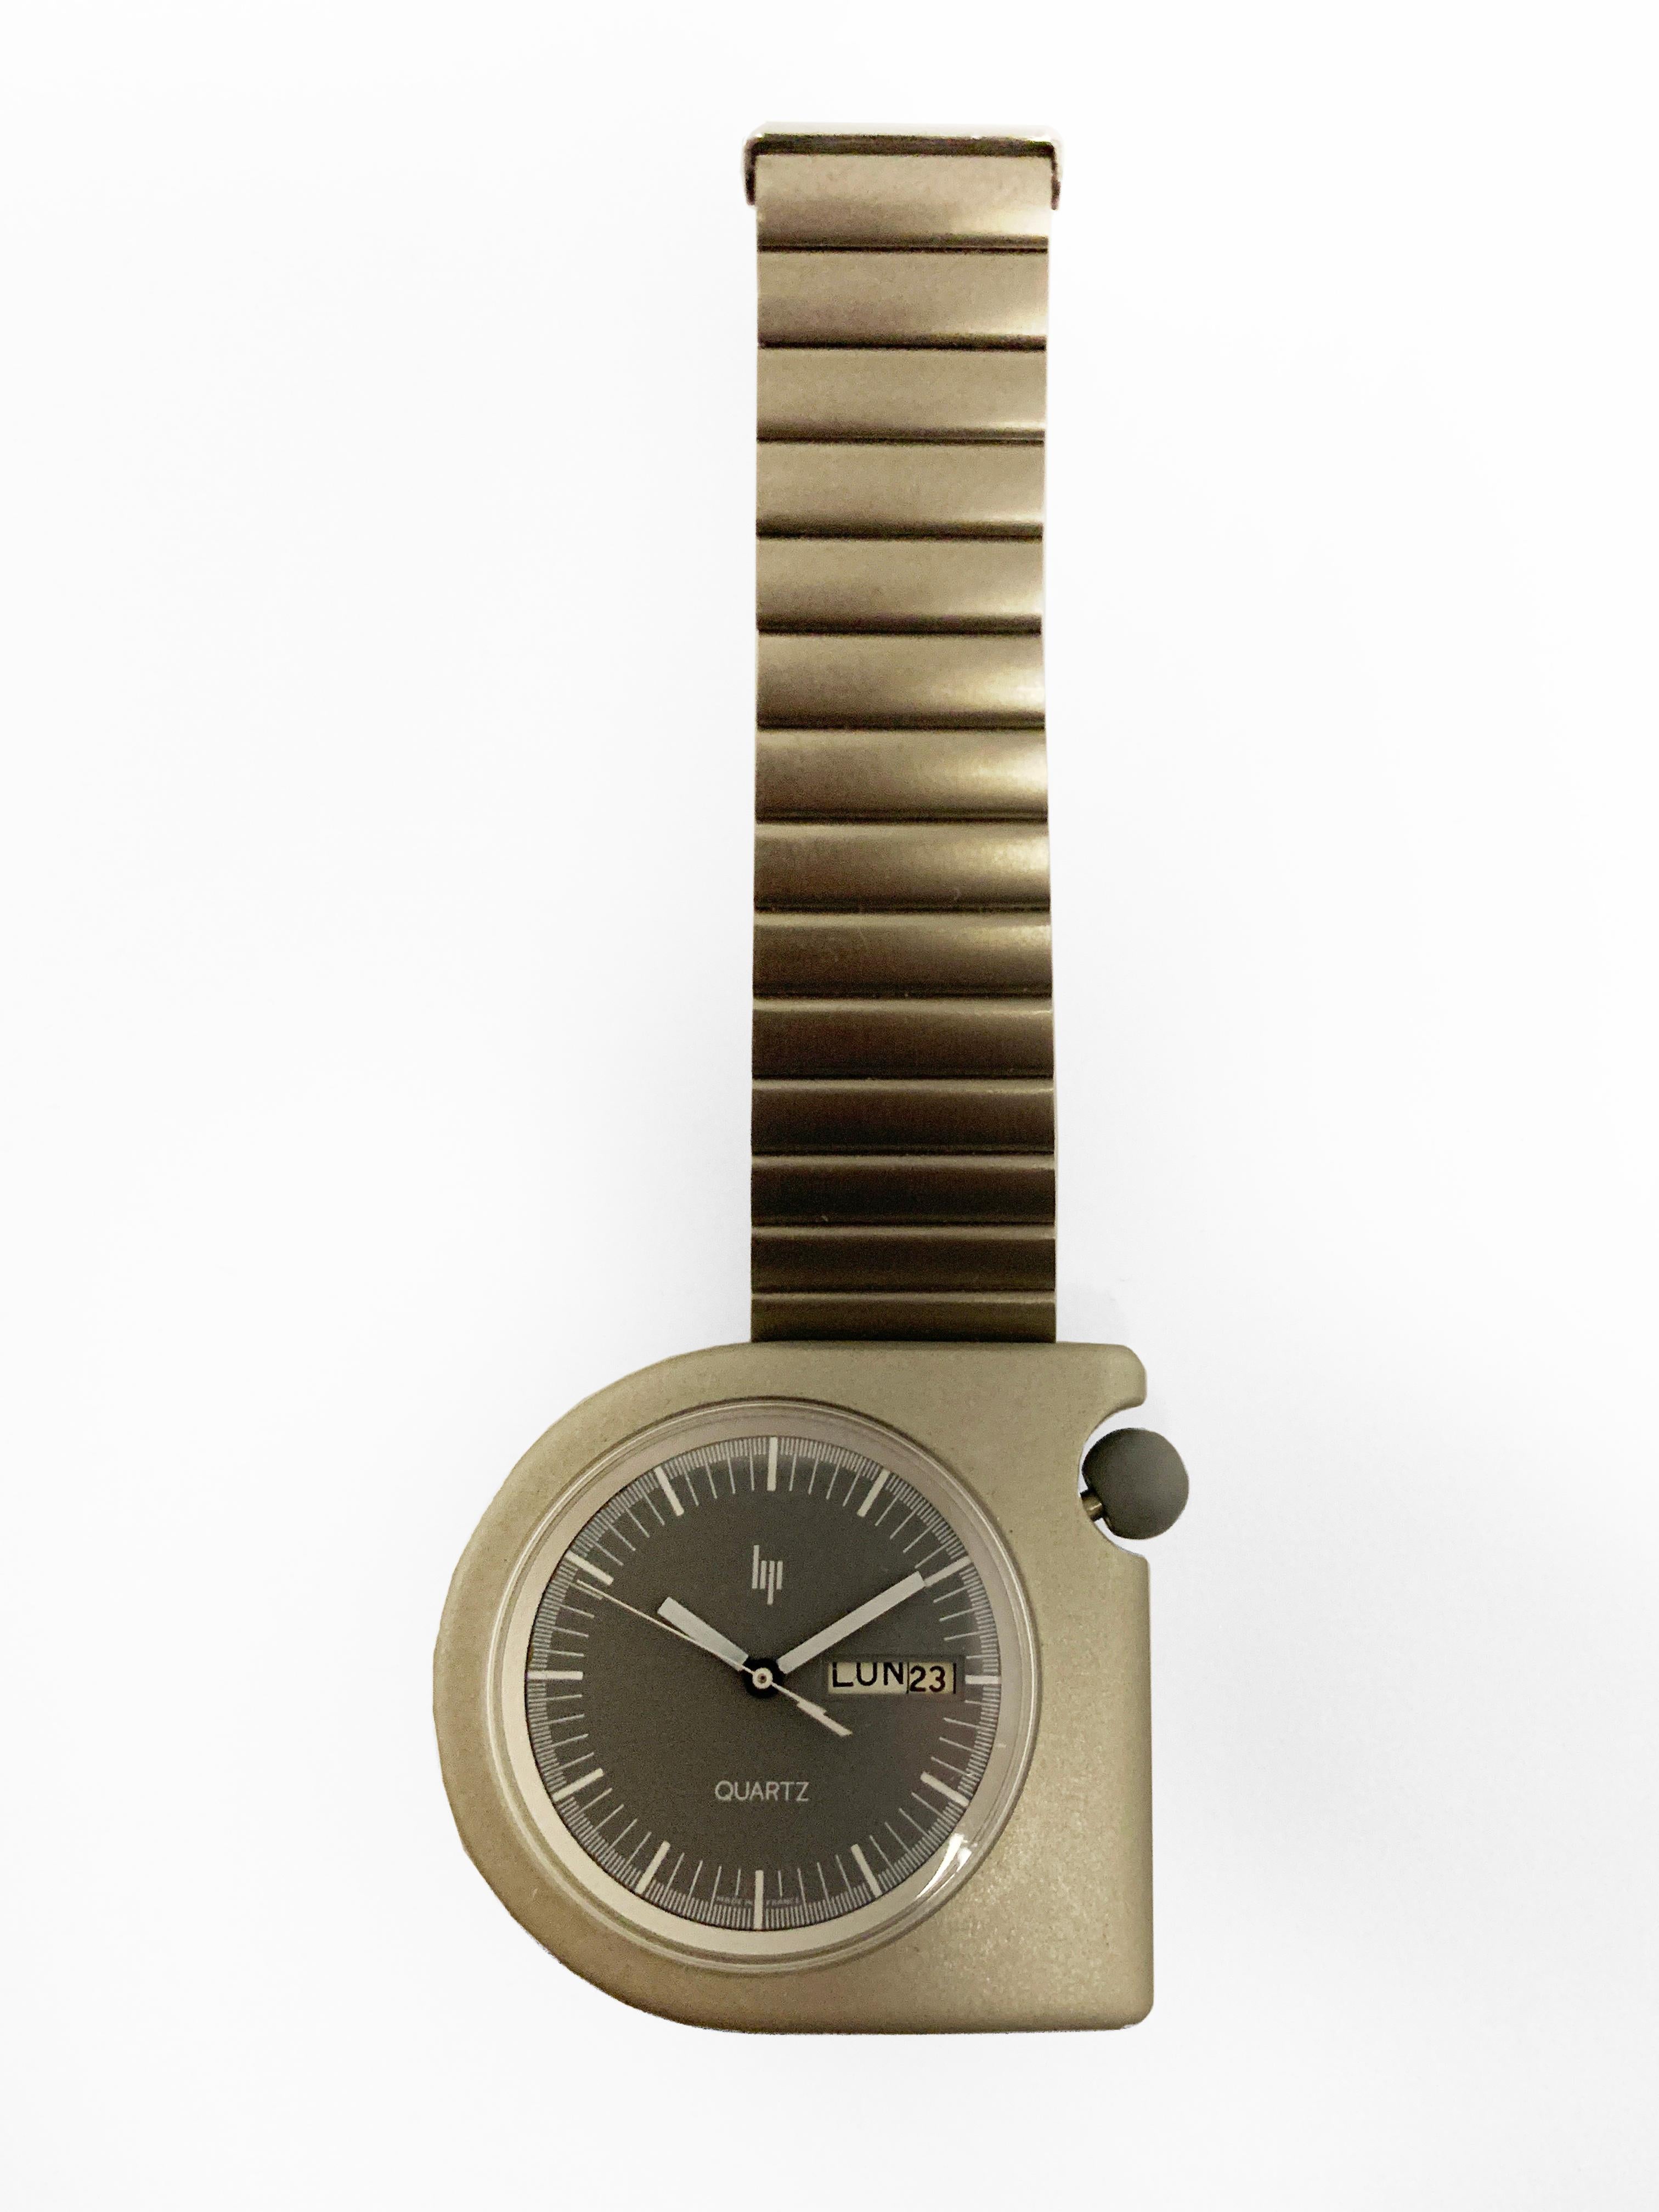 Lippen
Roger Tallon
Um 1980
Aluminium-Gehäuse
Stahlzifferblatt
Quarzwerk
Durchmesser: 43 mm
Stahlarmband
neue Uhr auf Lager
perfekter Zustand
690 Euro